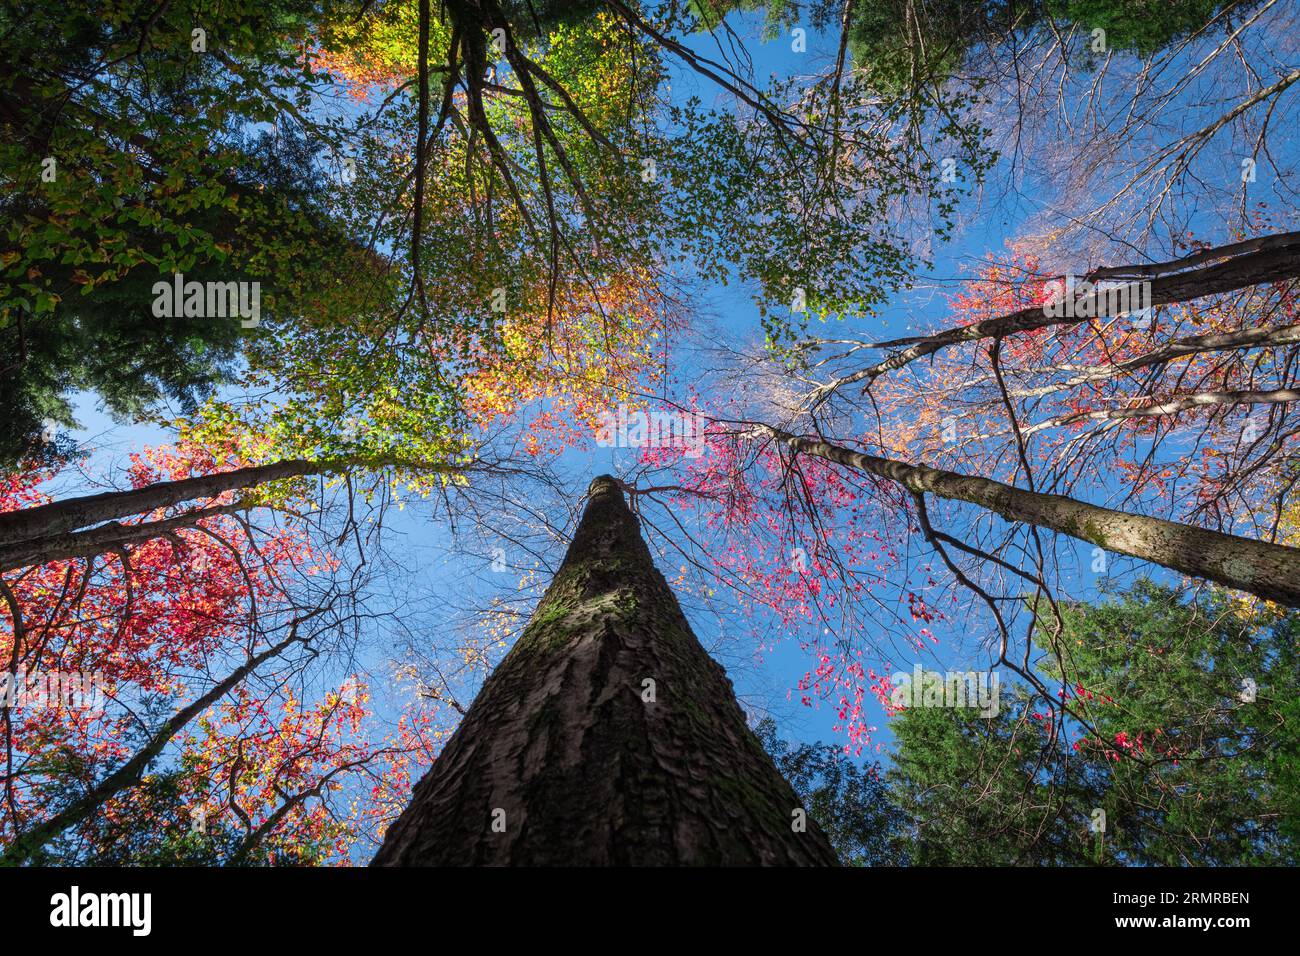 Alti alberi autunnali al Lye Brook Hollow di Manchester, Vermont, USA, in un pomeriggio di sole, con foglie autunnali di colore diverso contro un cielo blu. Foto Stock